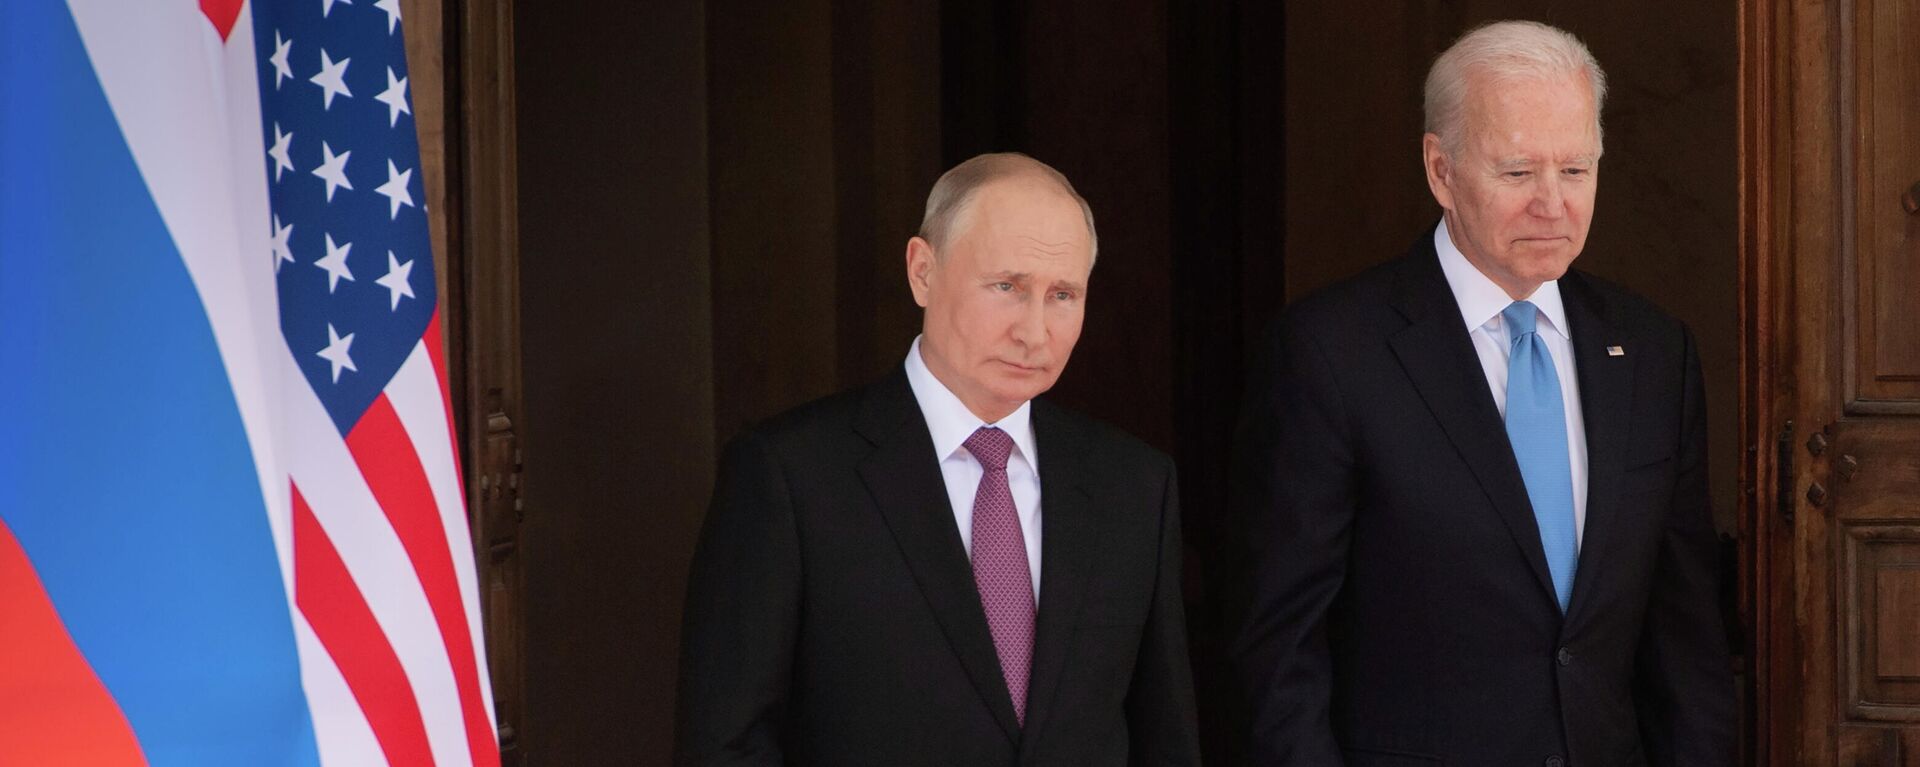 Vladímir Putin, presidente de Rusia, y Joe Biden, presidente de EEUU - Sputnik Mundo, 1920, 17.06.2021